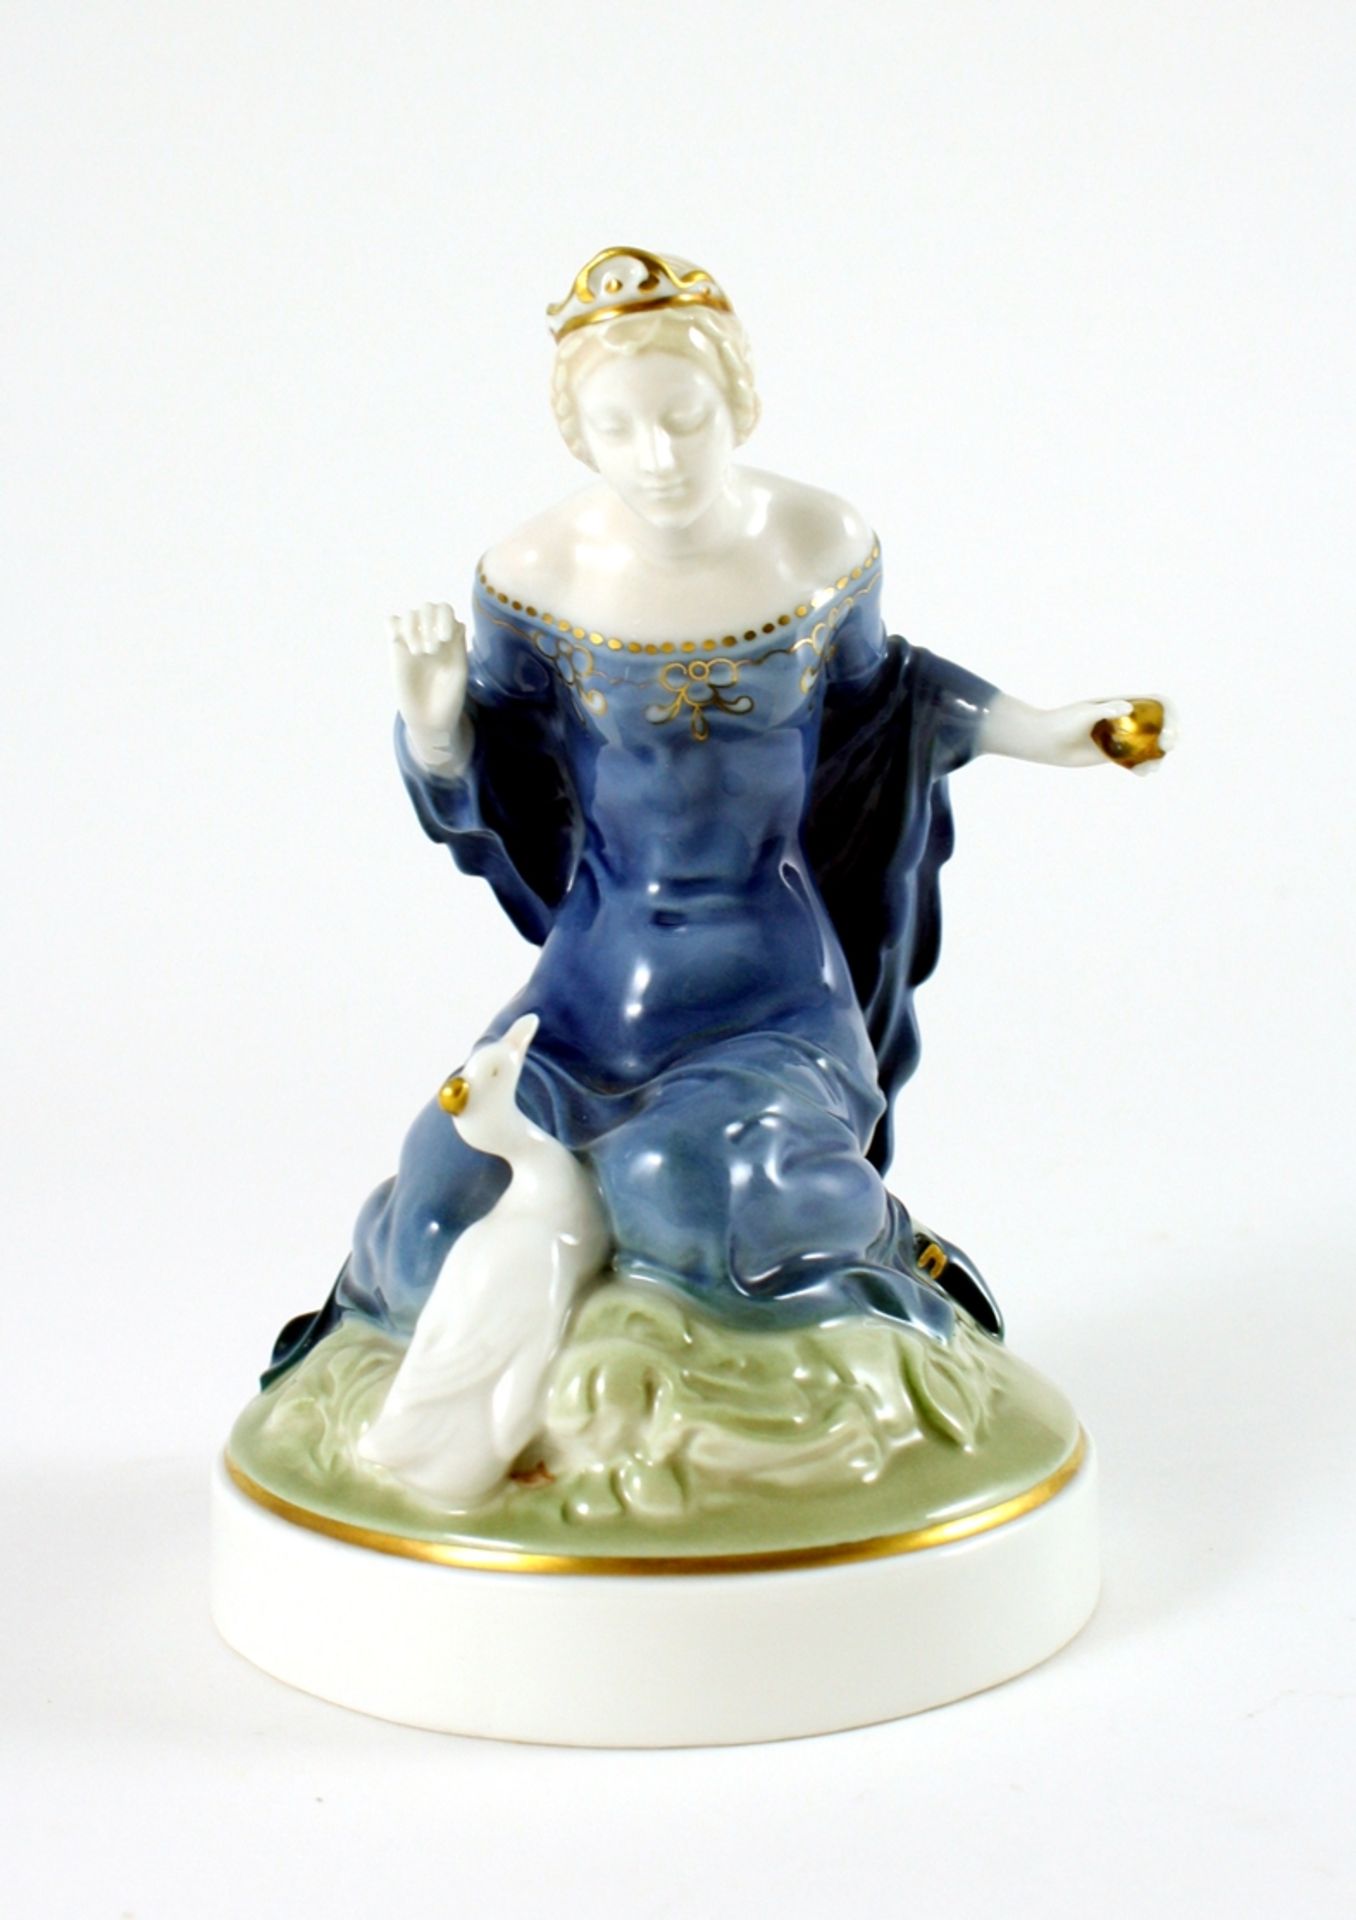 Figurine 'Zwei Prinzessinnen'. Unterglasurstaffage. Formnr. 537. Entwurf Ferdinand Liebermann 1919.